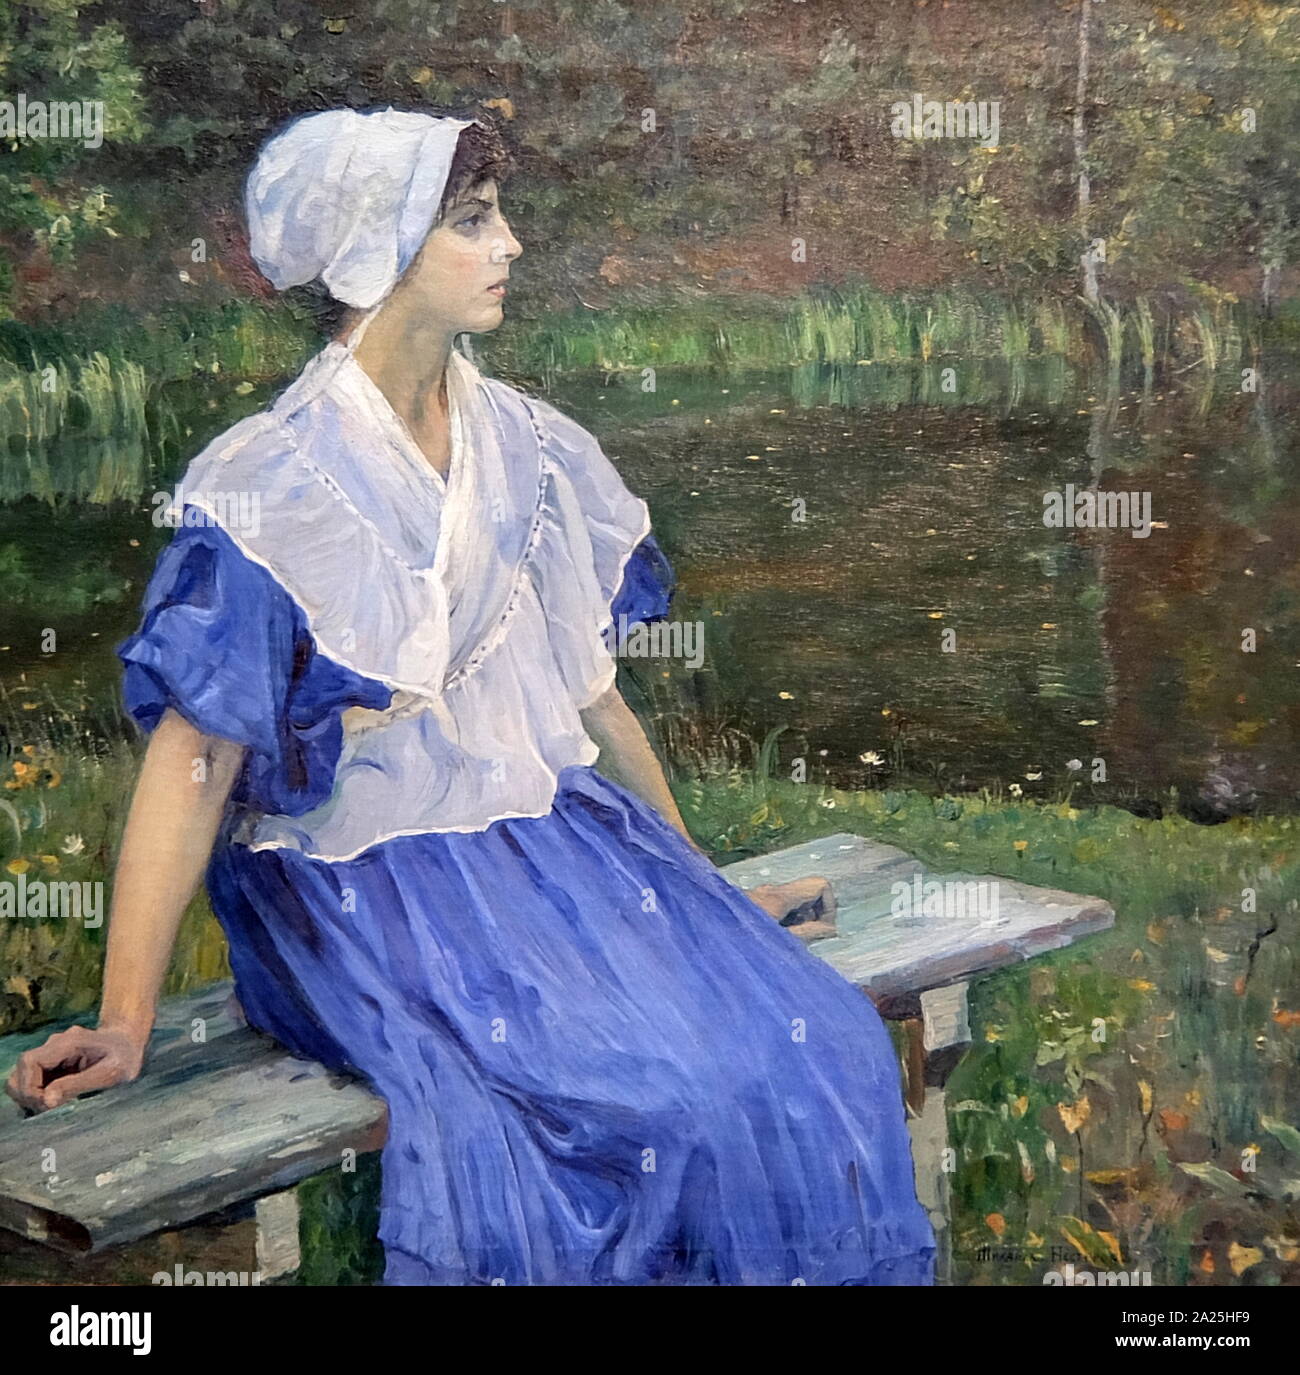 Pittura intitolata 'Una ragazza dal Pond' un ritratto di N. M. Nesterova di Mikhail Nesterov. Mikhail Vasilyevich Nesterov (1862-1942) un russo e il pittore sovietico. Foto Stock